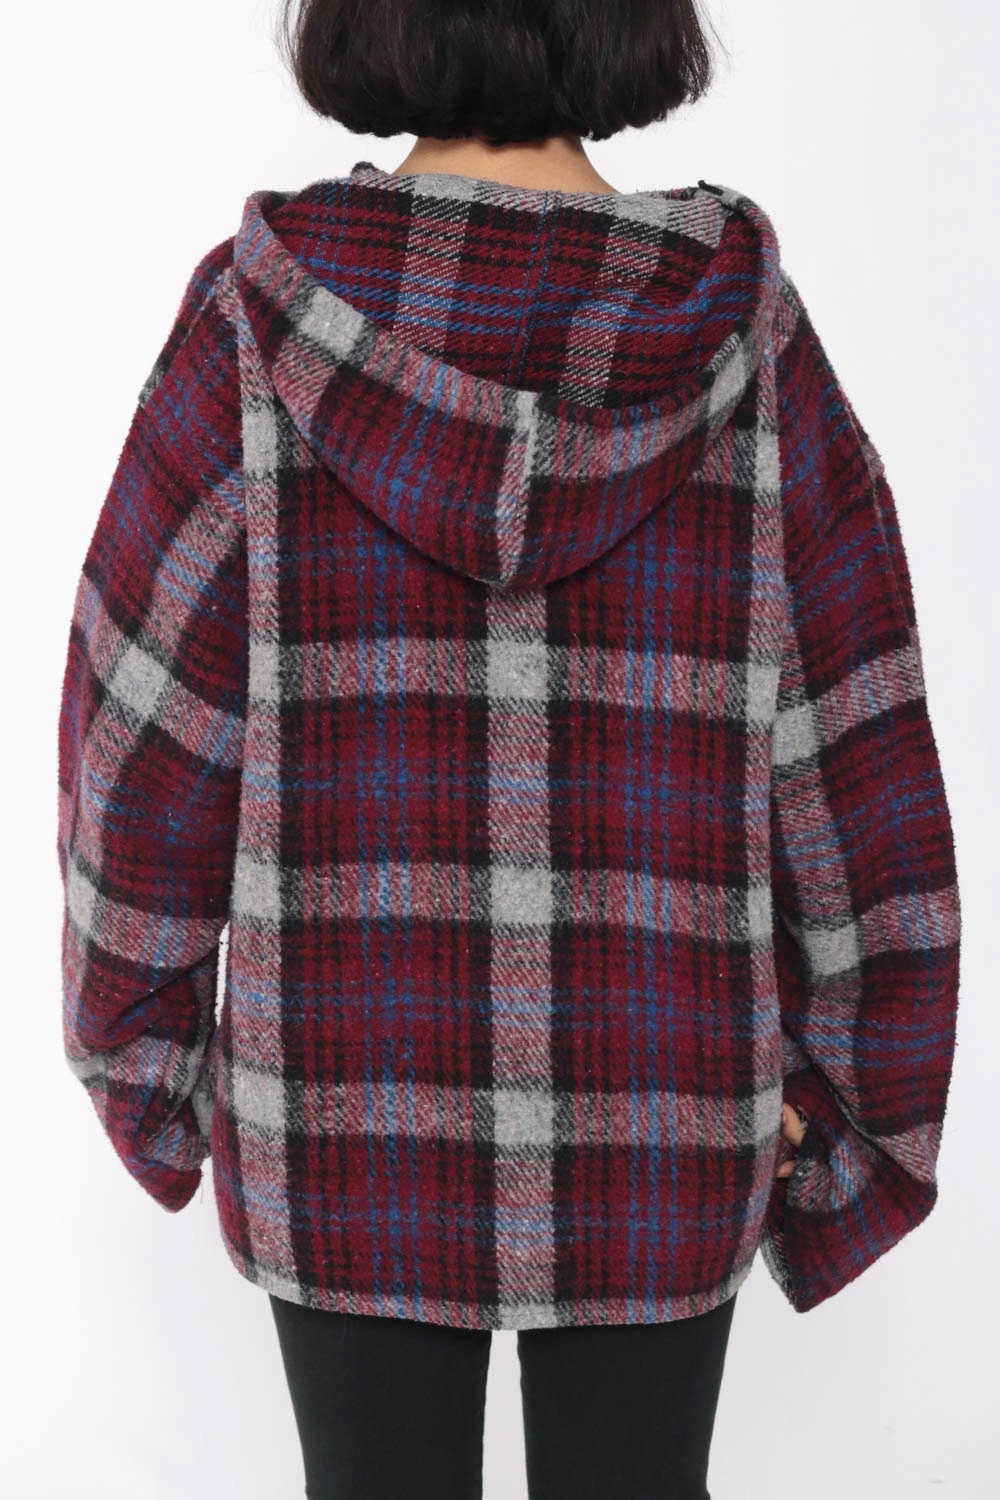 Plaid Hooded Jacket Pullover Burgundy PLAID Sweatshirt 90s Grunge ...